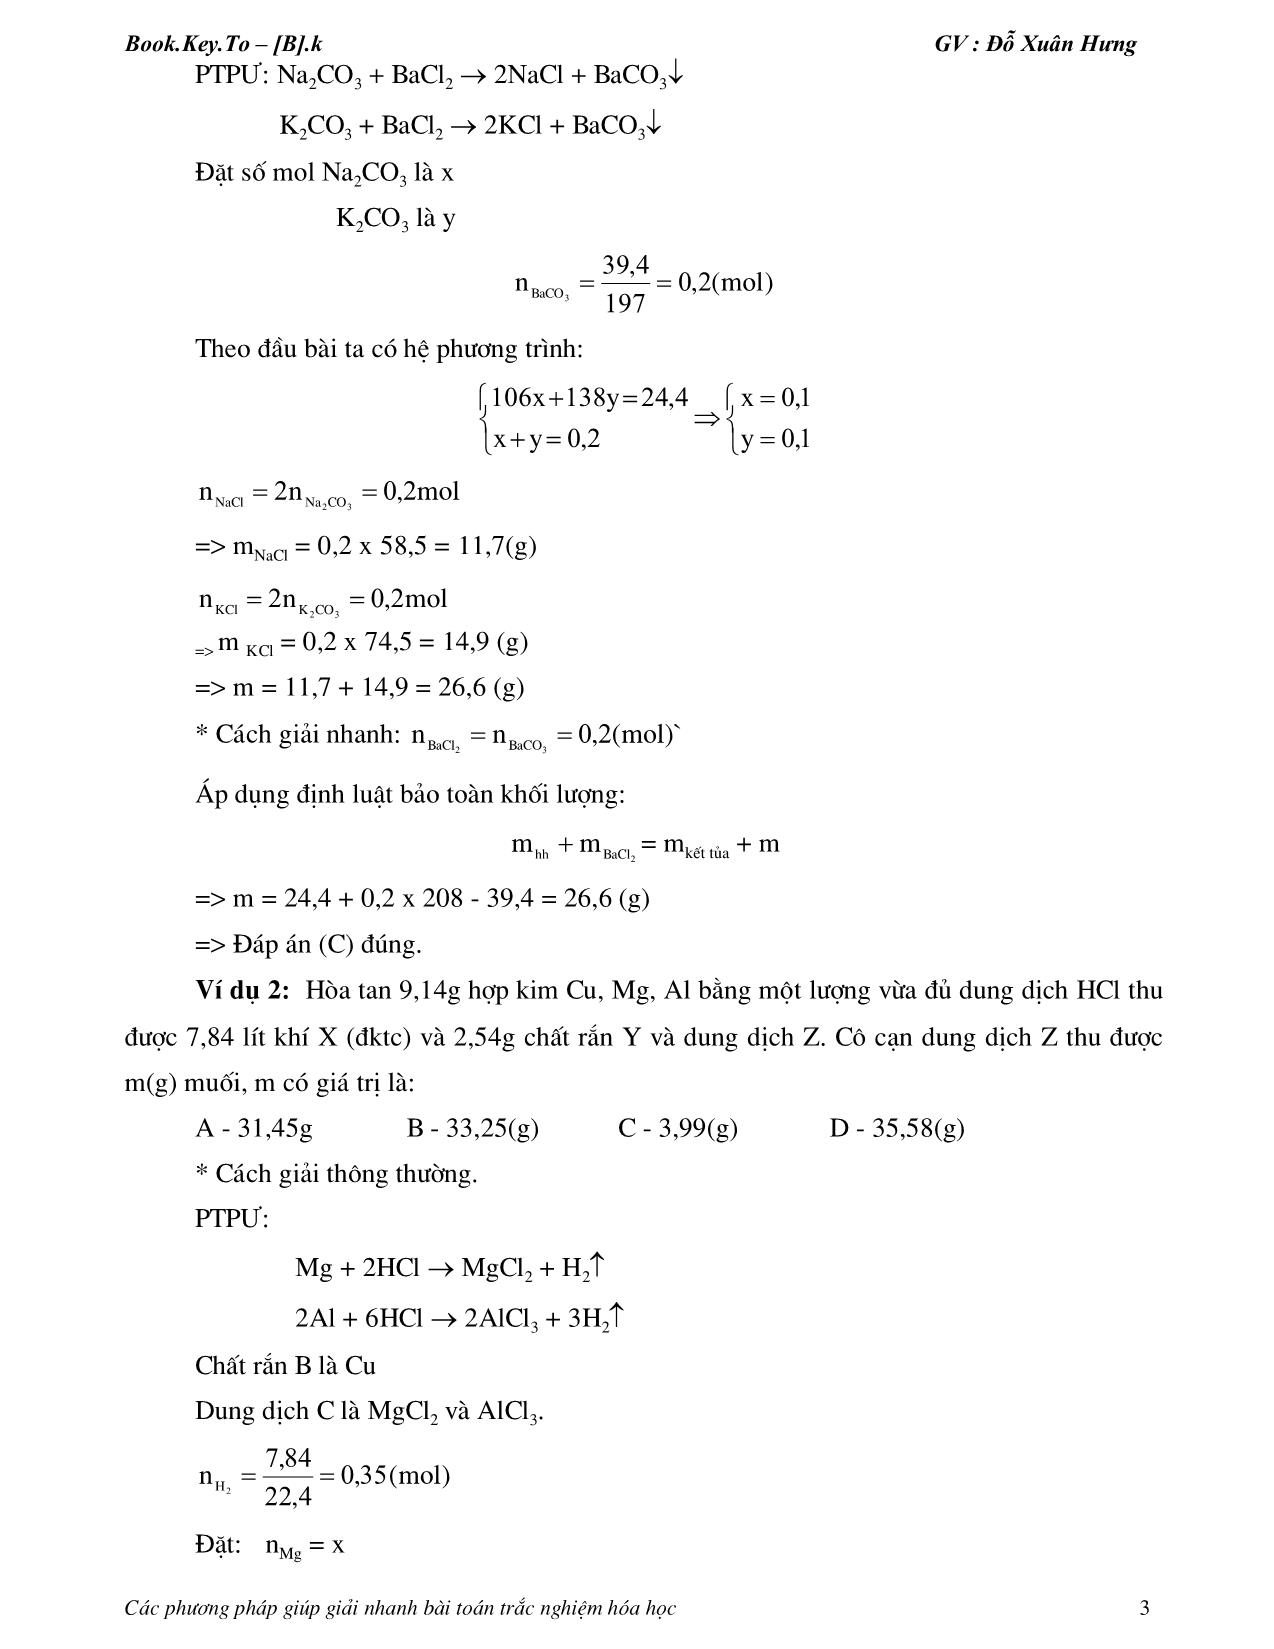 Các phương pháp giúp giải nhanh bài toán hóa học trang 3